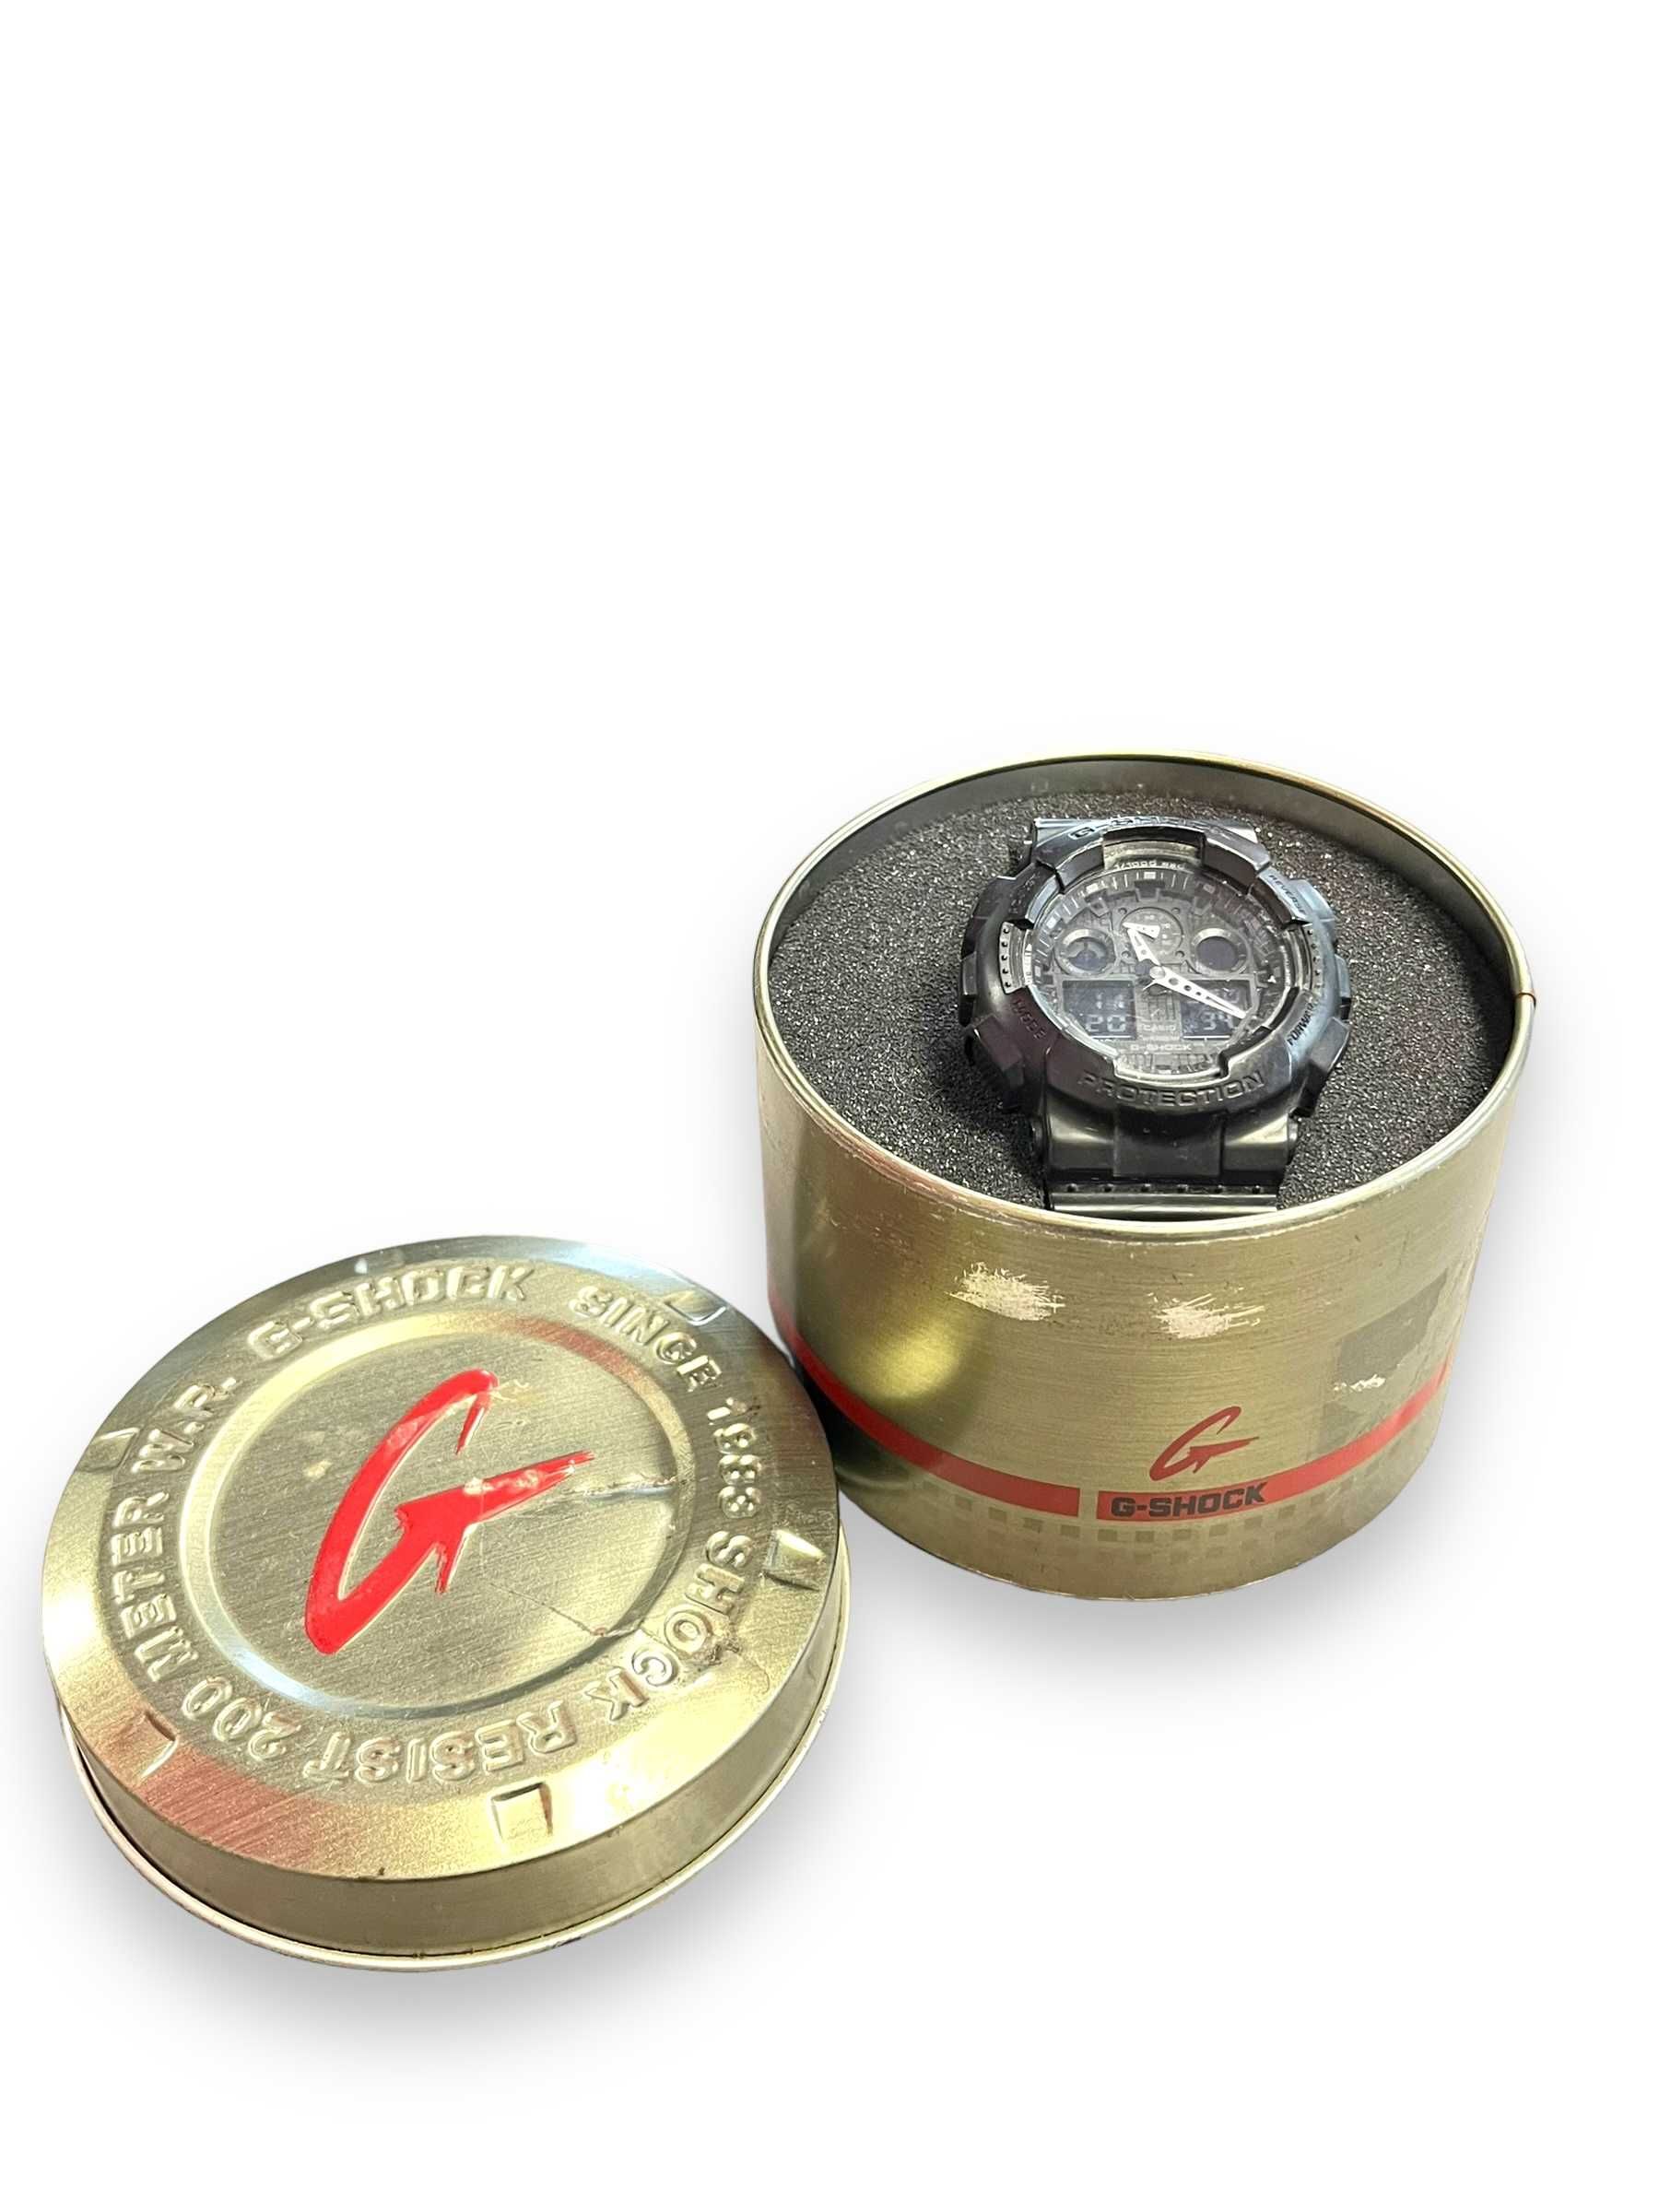 Zegarek Chronograficzny G-Shock GA-100-AA